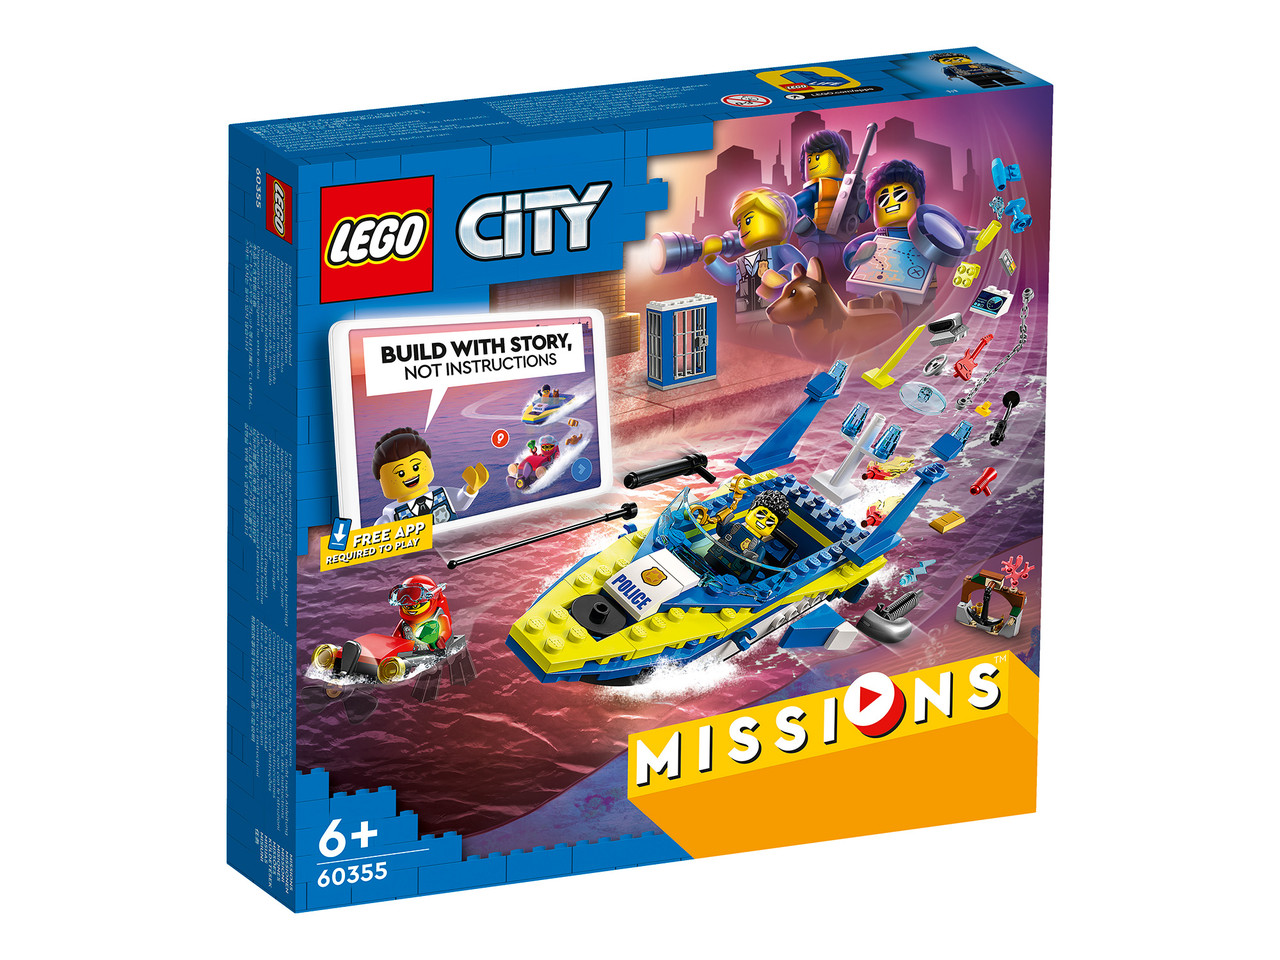 60355 Lego City Missions Детективные миссии водной полиции, Лего Миссии Город Сити